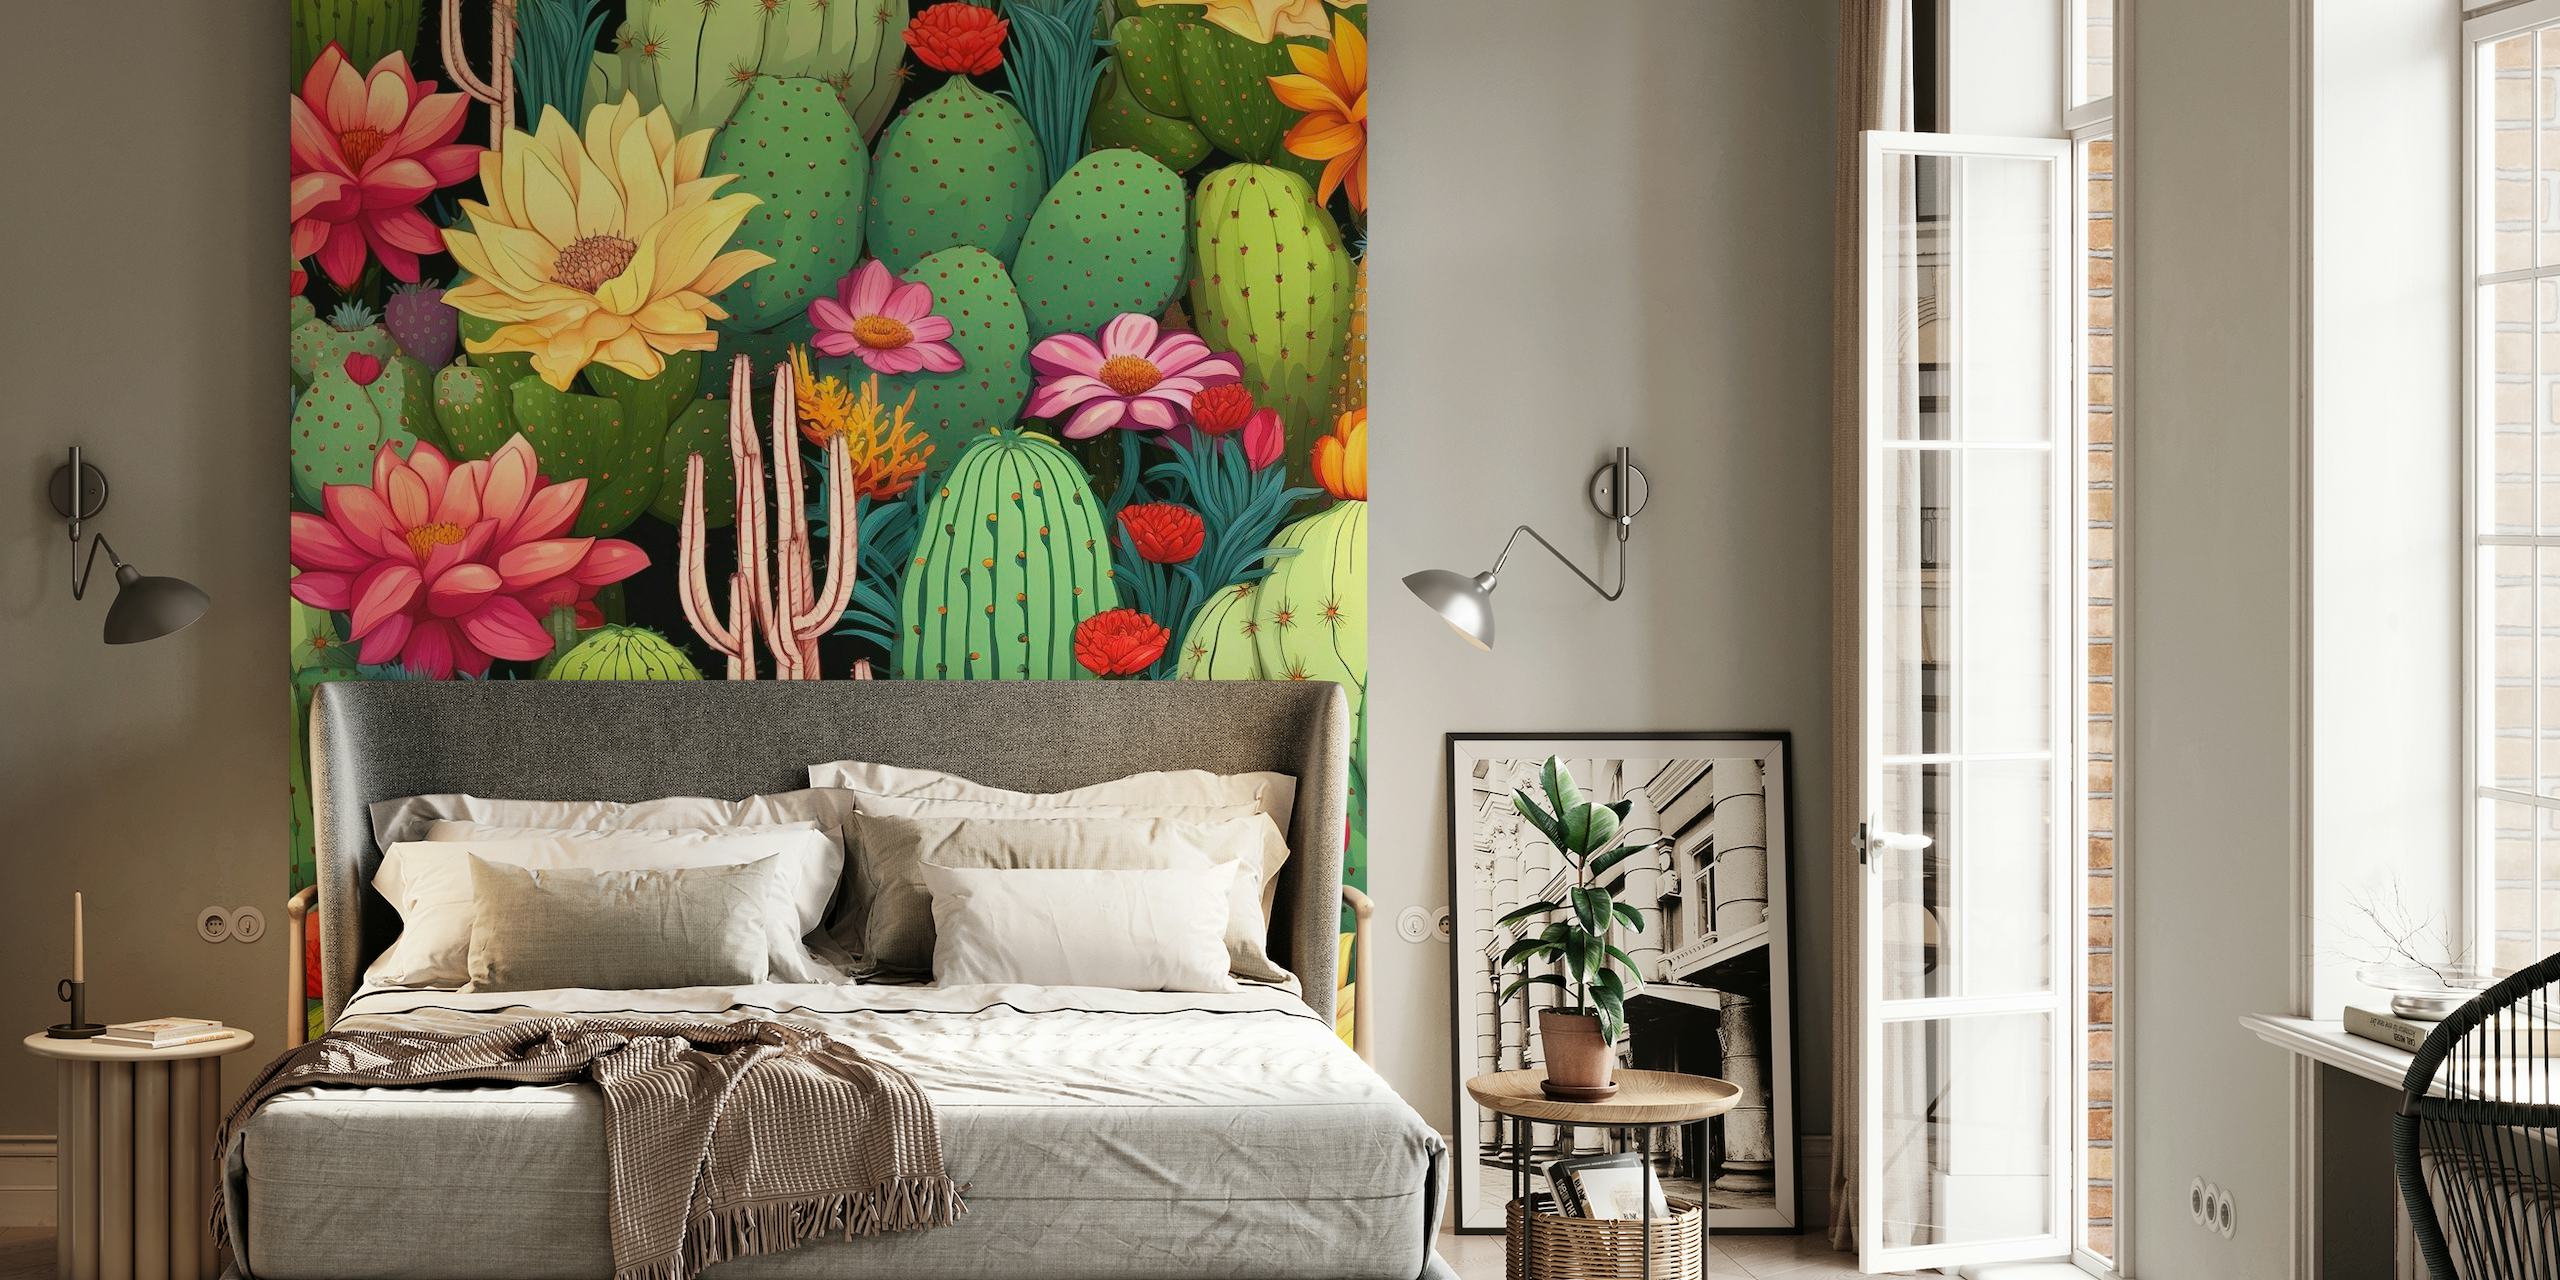 Zidna slika sa živopisnim kaktusima i cvijećem s raznim sukulentima u živahnoj kompoziciji